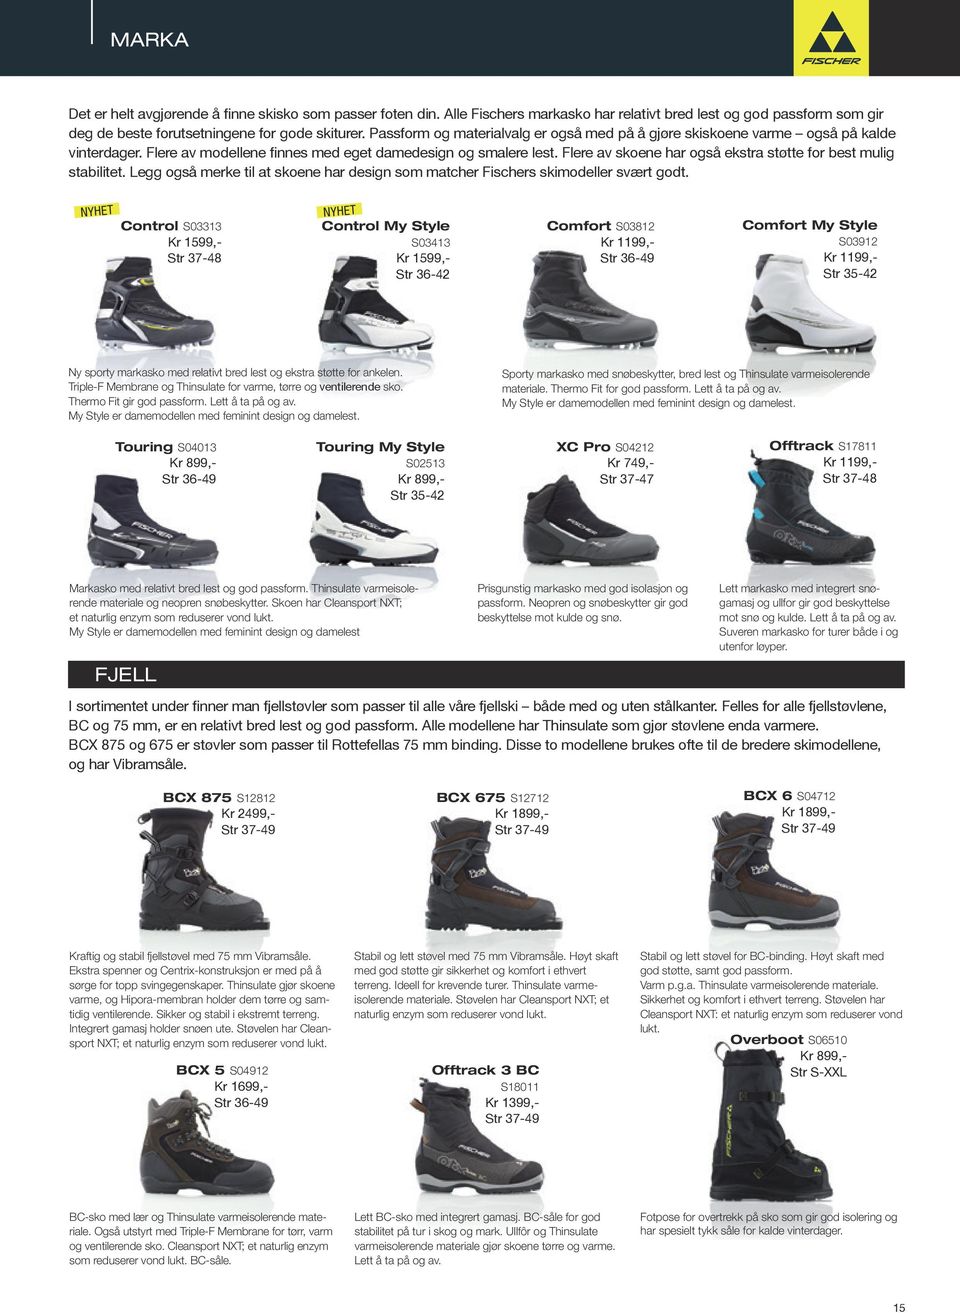 Flere av skoene har også ekstra støtte for best mulig stabilitet. Legg også merke til at skoene har design som matcher Fischers skimodeller svært godt.